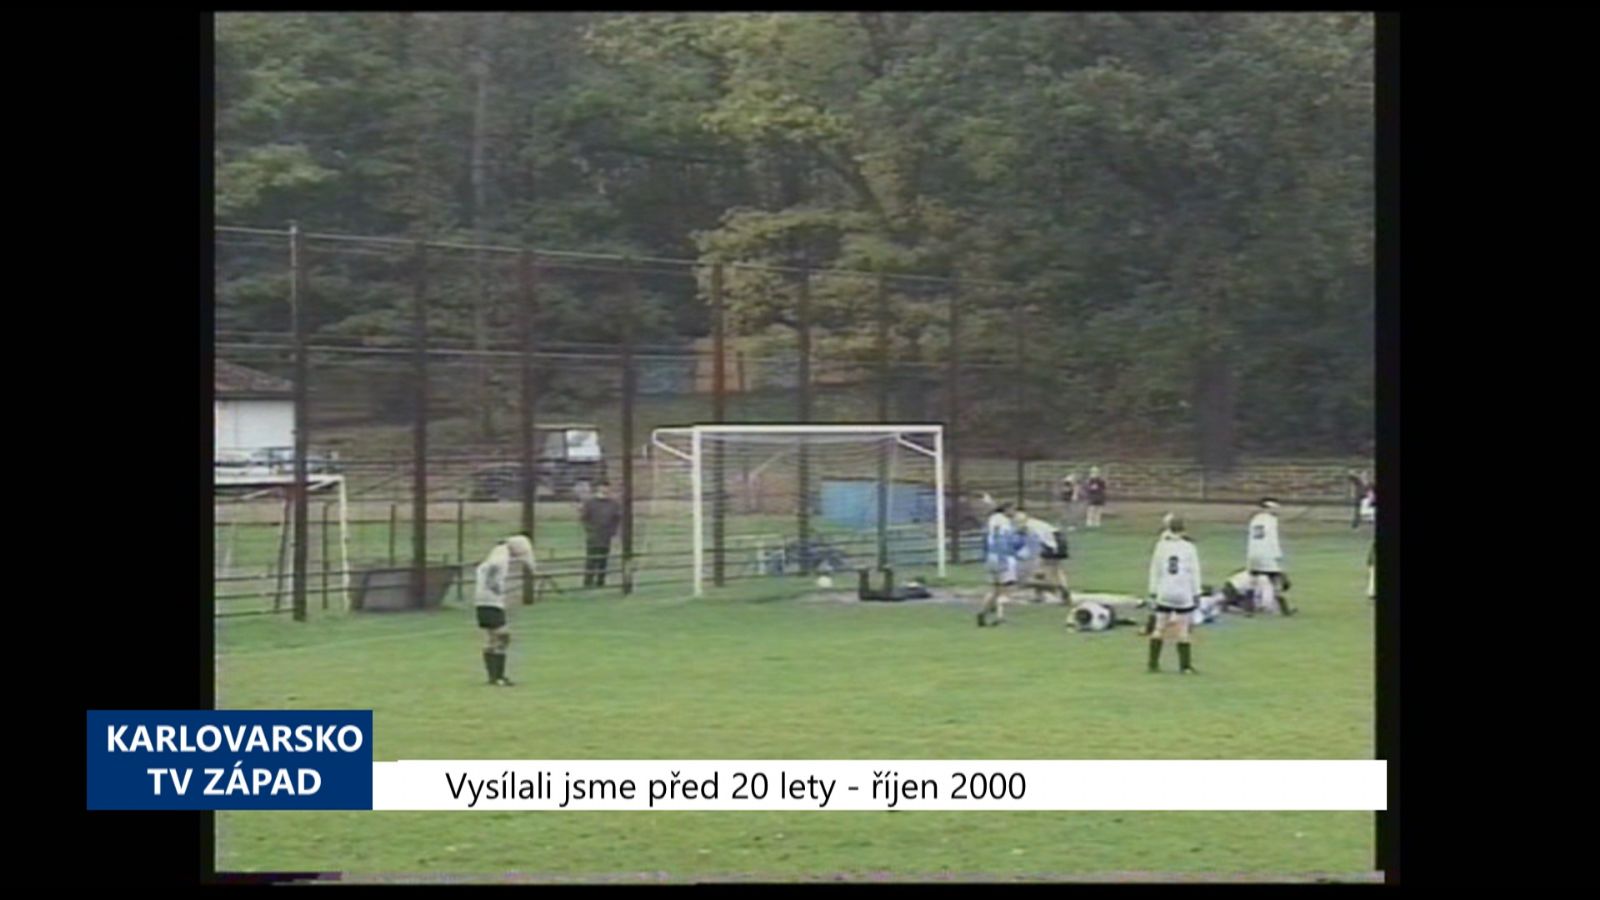 2000 – Cheb: Domácí fotbalistky zvítězily s čistým kontem (TV Západ) 